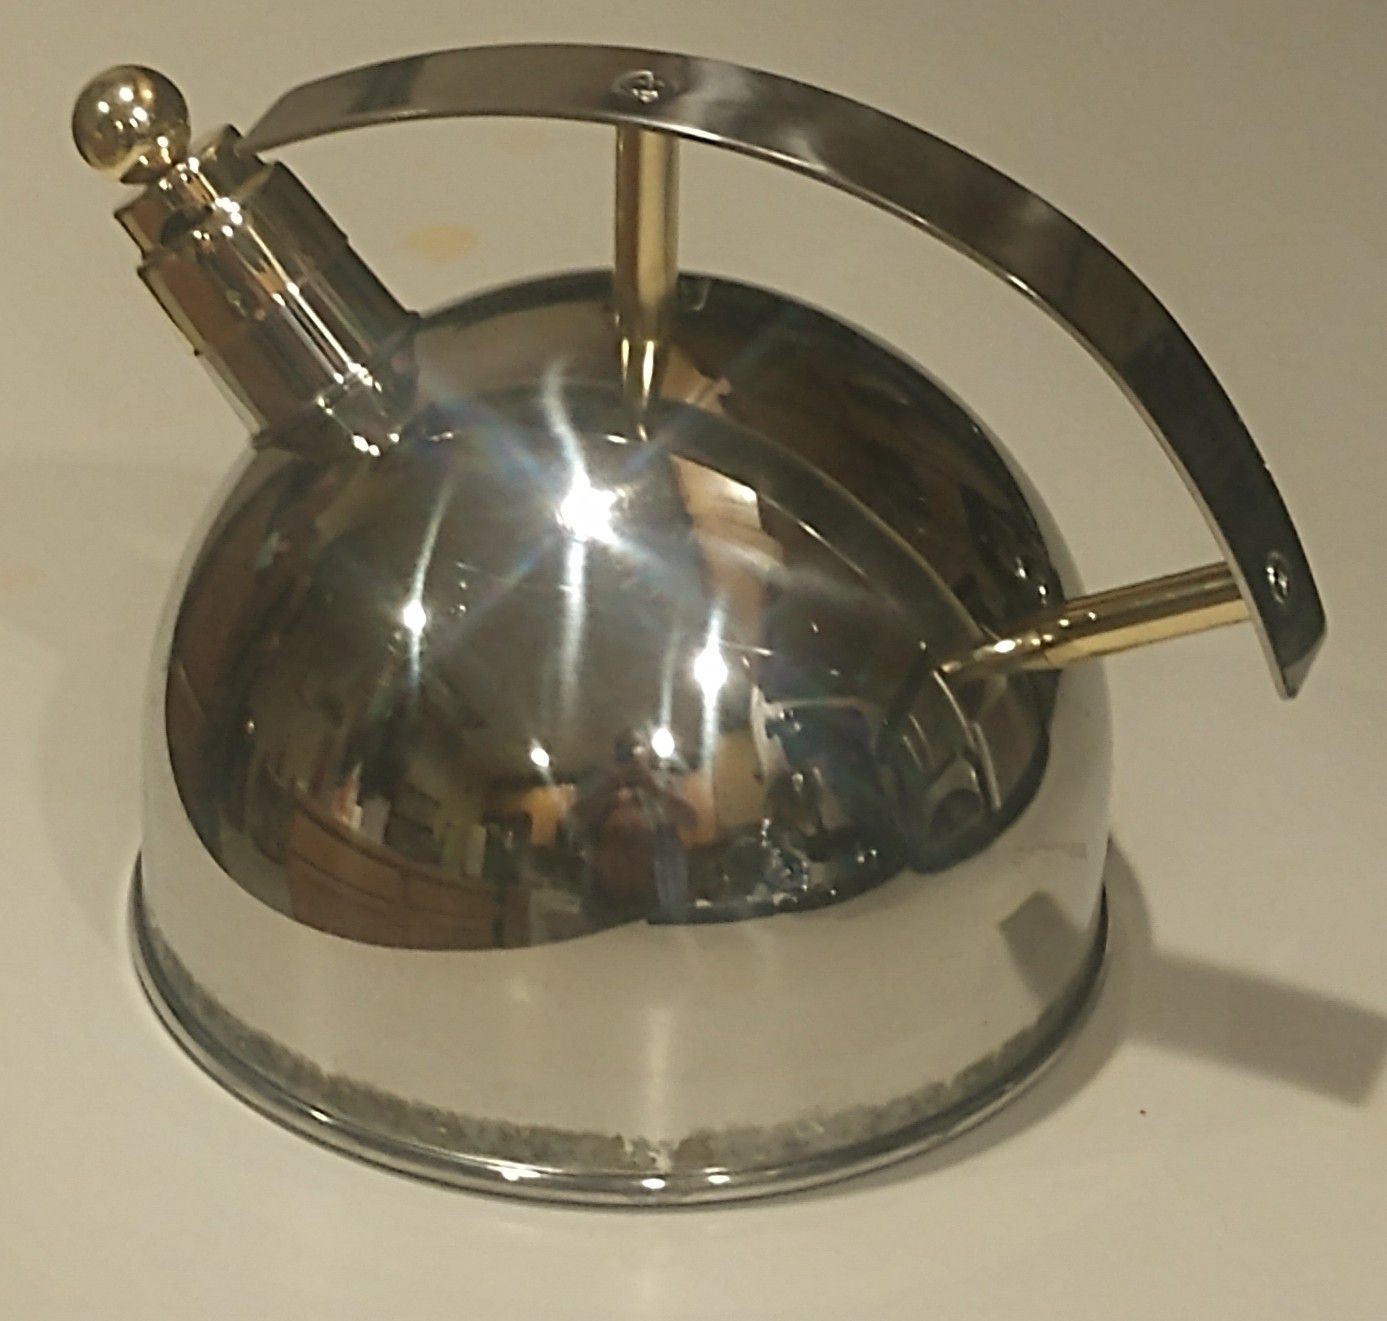 Chantel tea kettle